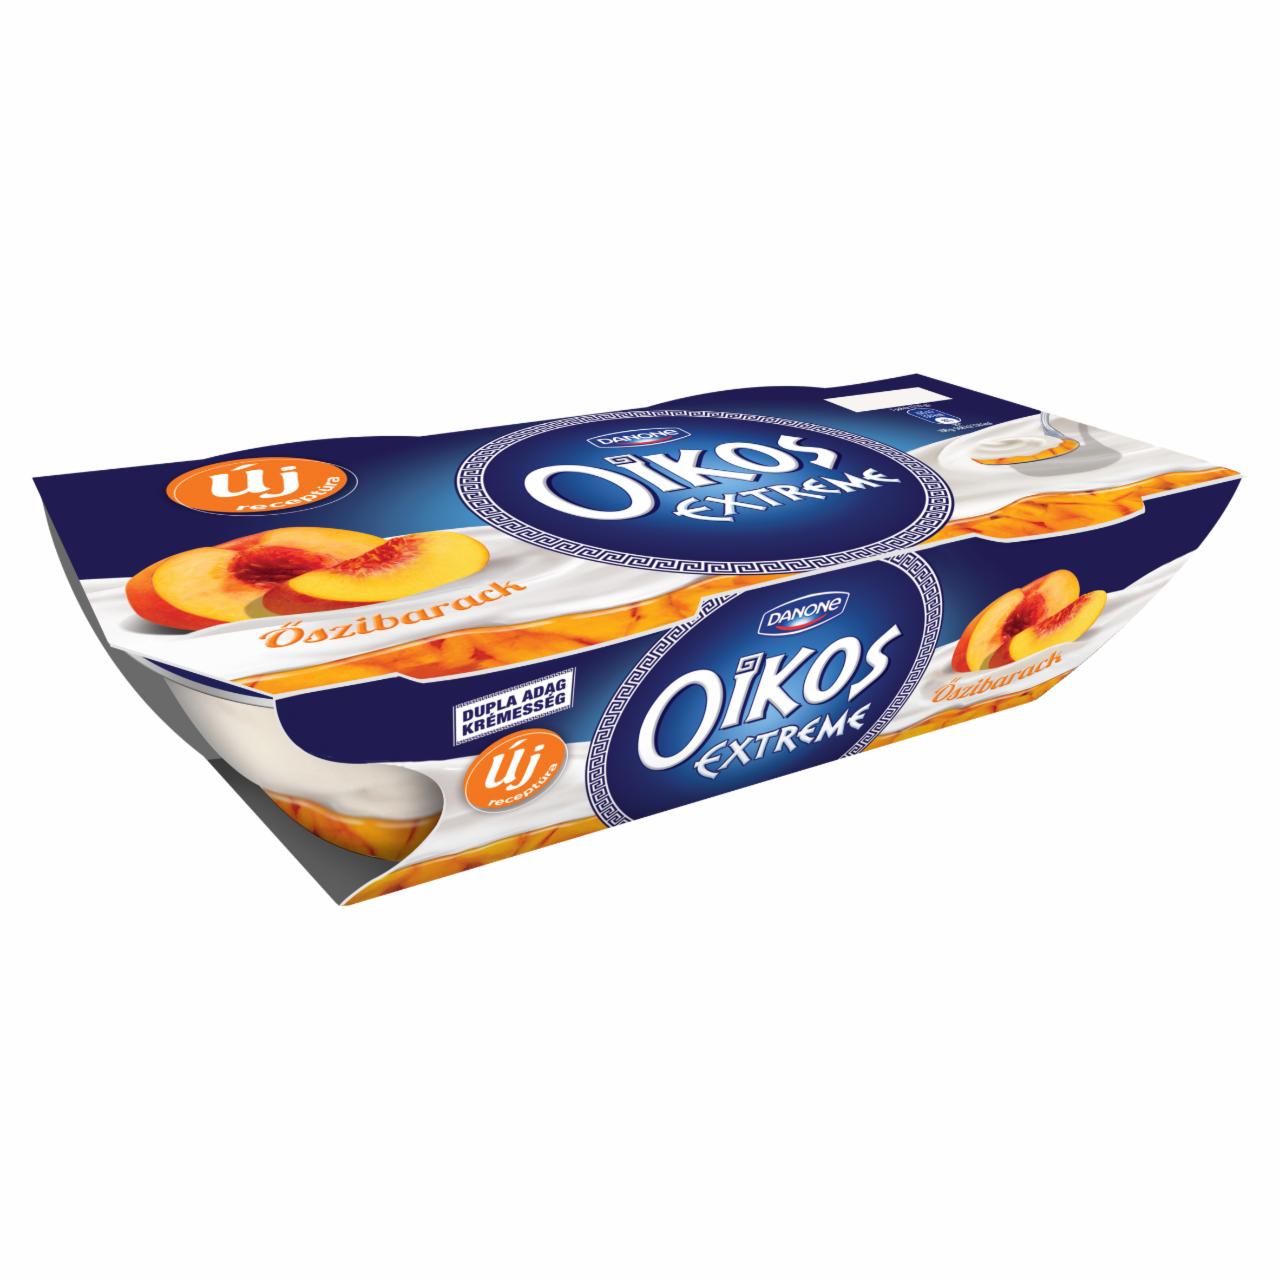 Képek - Danone Oikos Extreme élőflórás görög krémjoghurt őszibaracköntettel 2 x 110 g